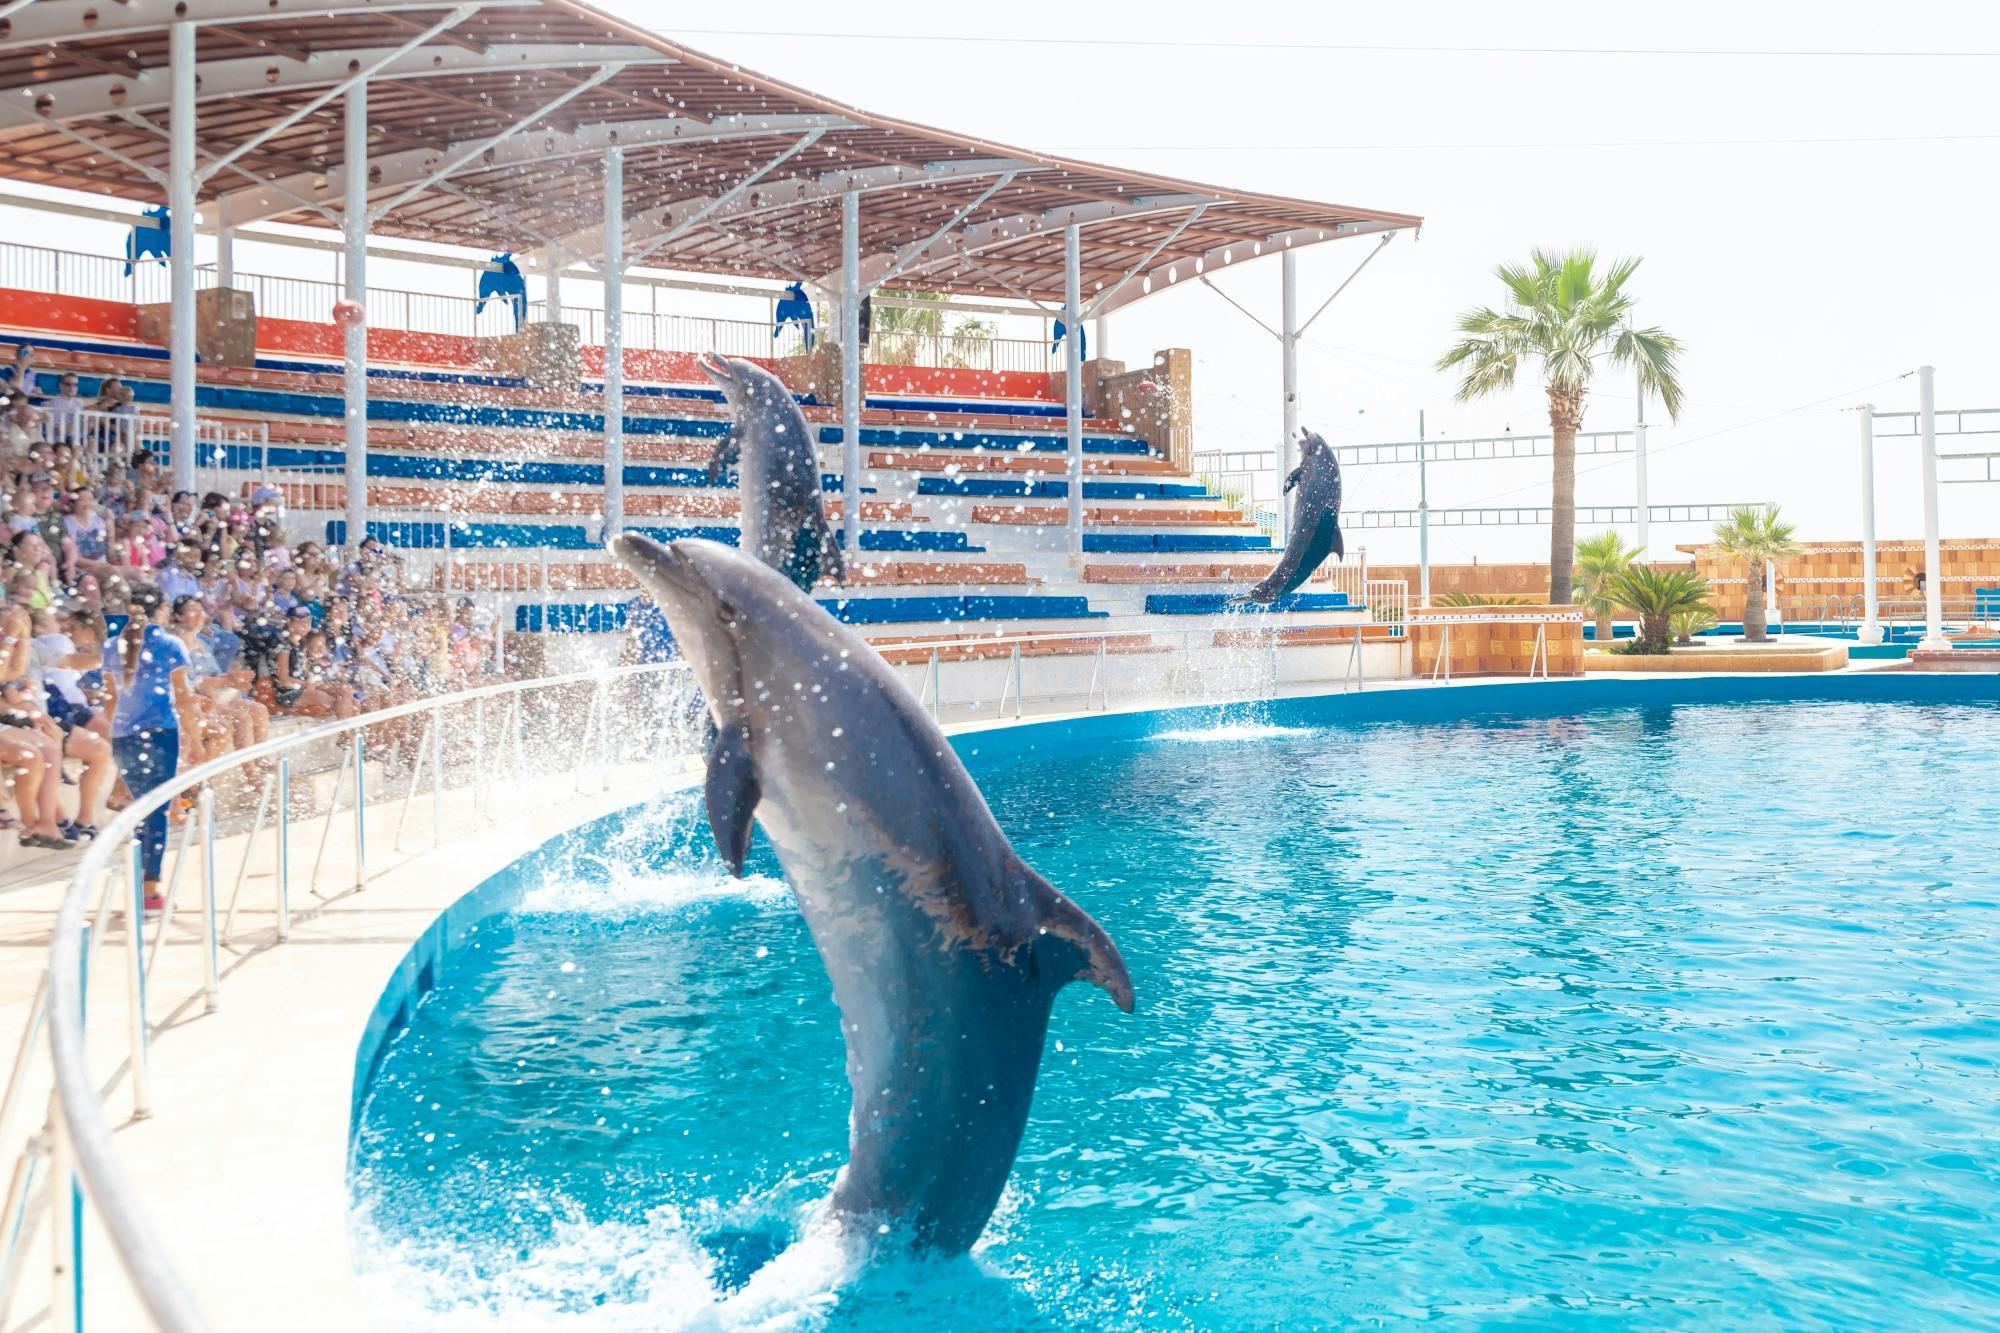 Sealanya Seapark & Dolphin Show with Transfer